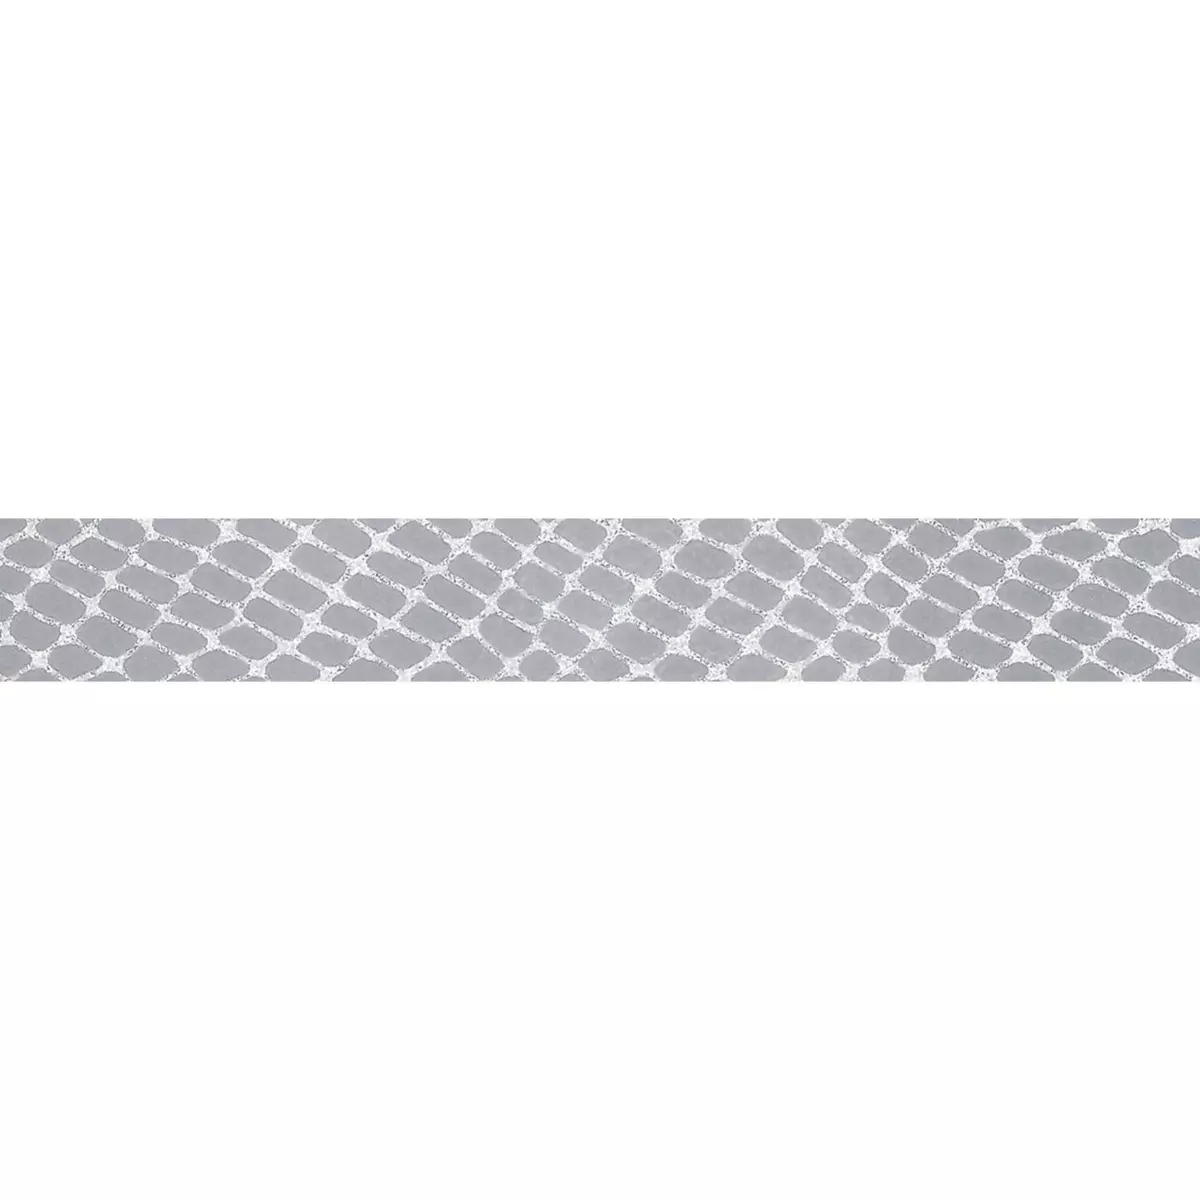  Masking tape - Argenté 15 mm x 10 m